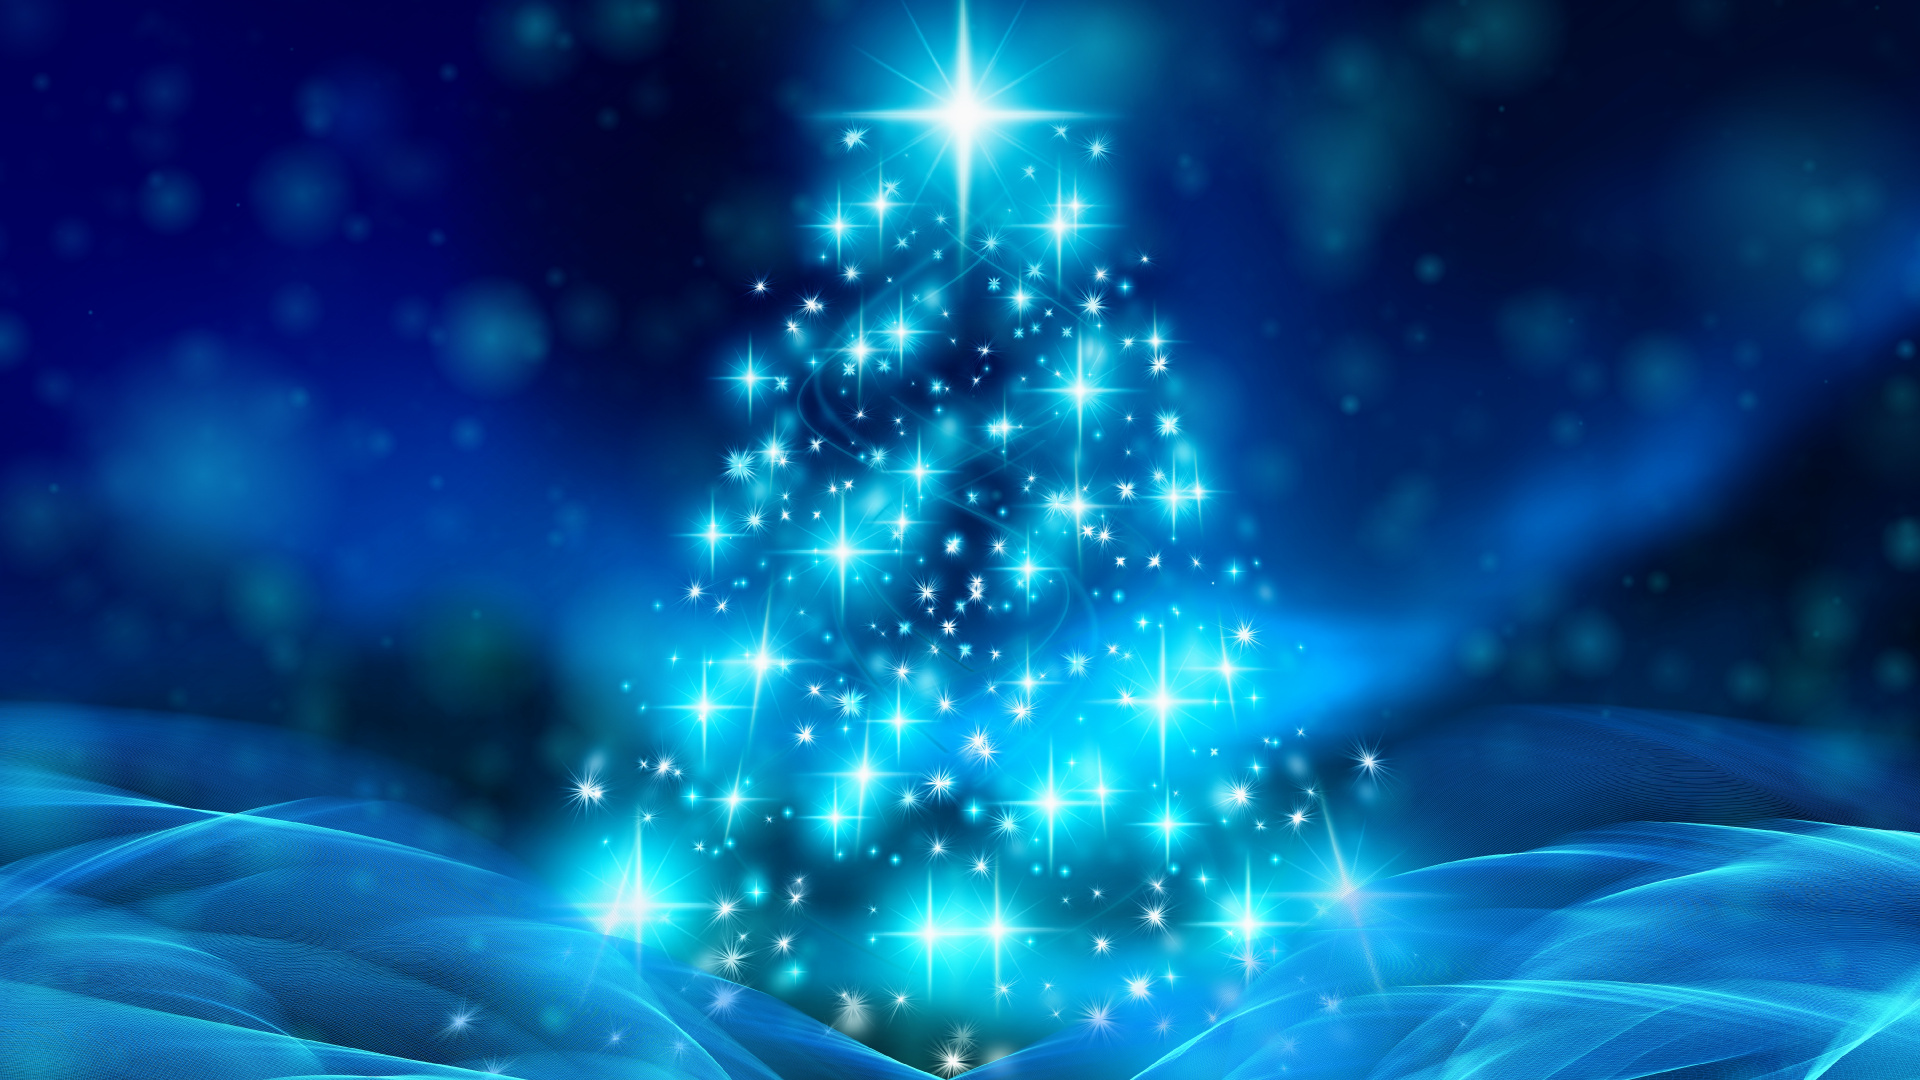 Weihnachten, Weihnachtsbaum, Weihnachtsdekoration, Blau, Baum. Wallpaper in 1920x1080 Resolution